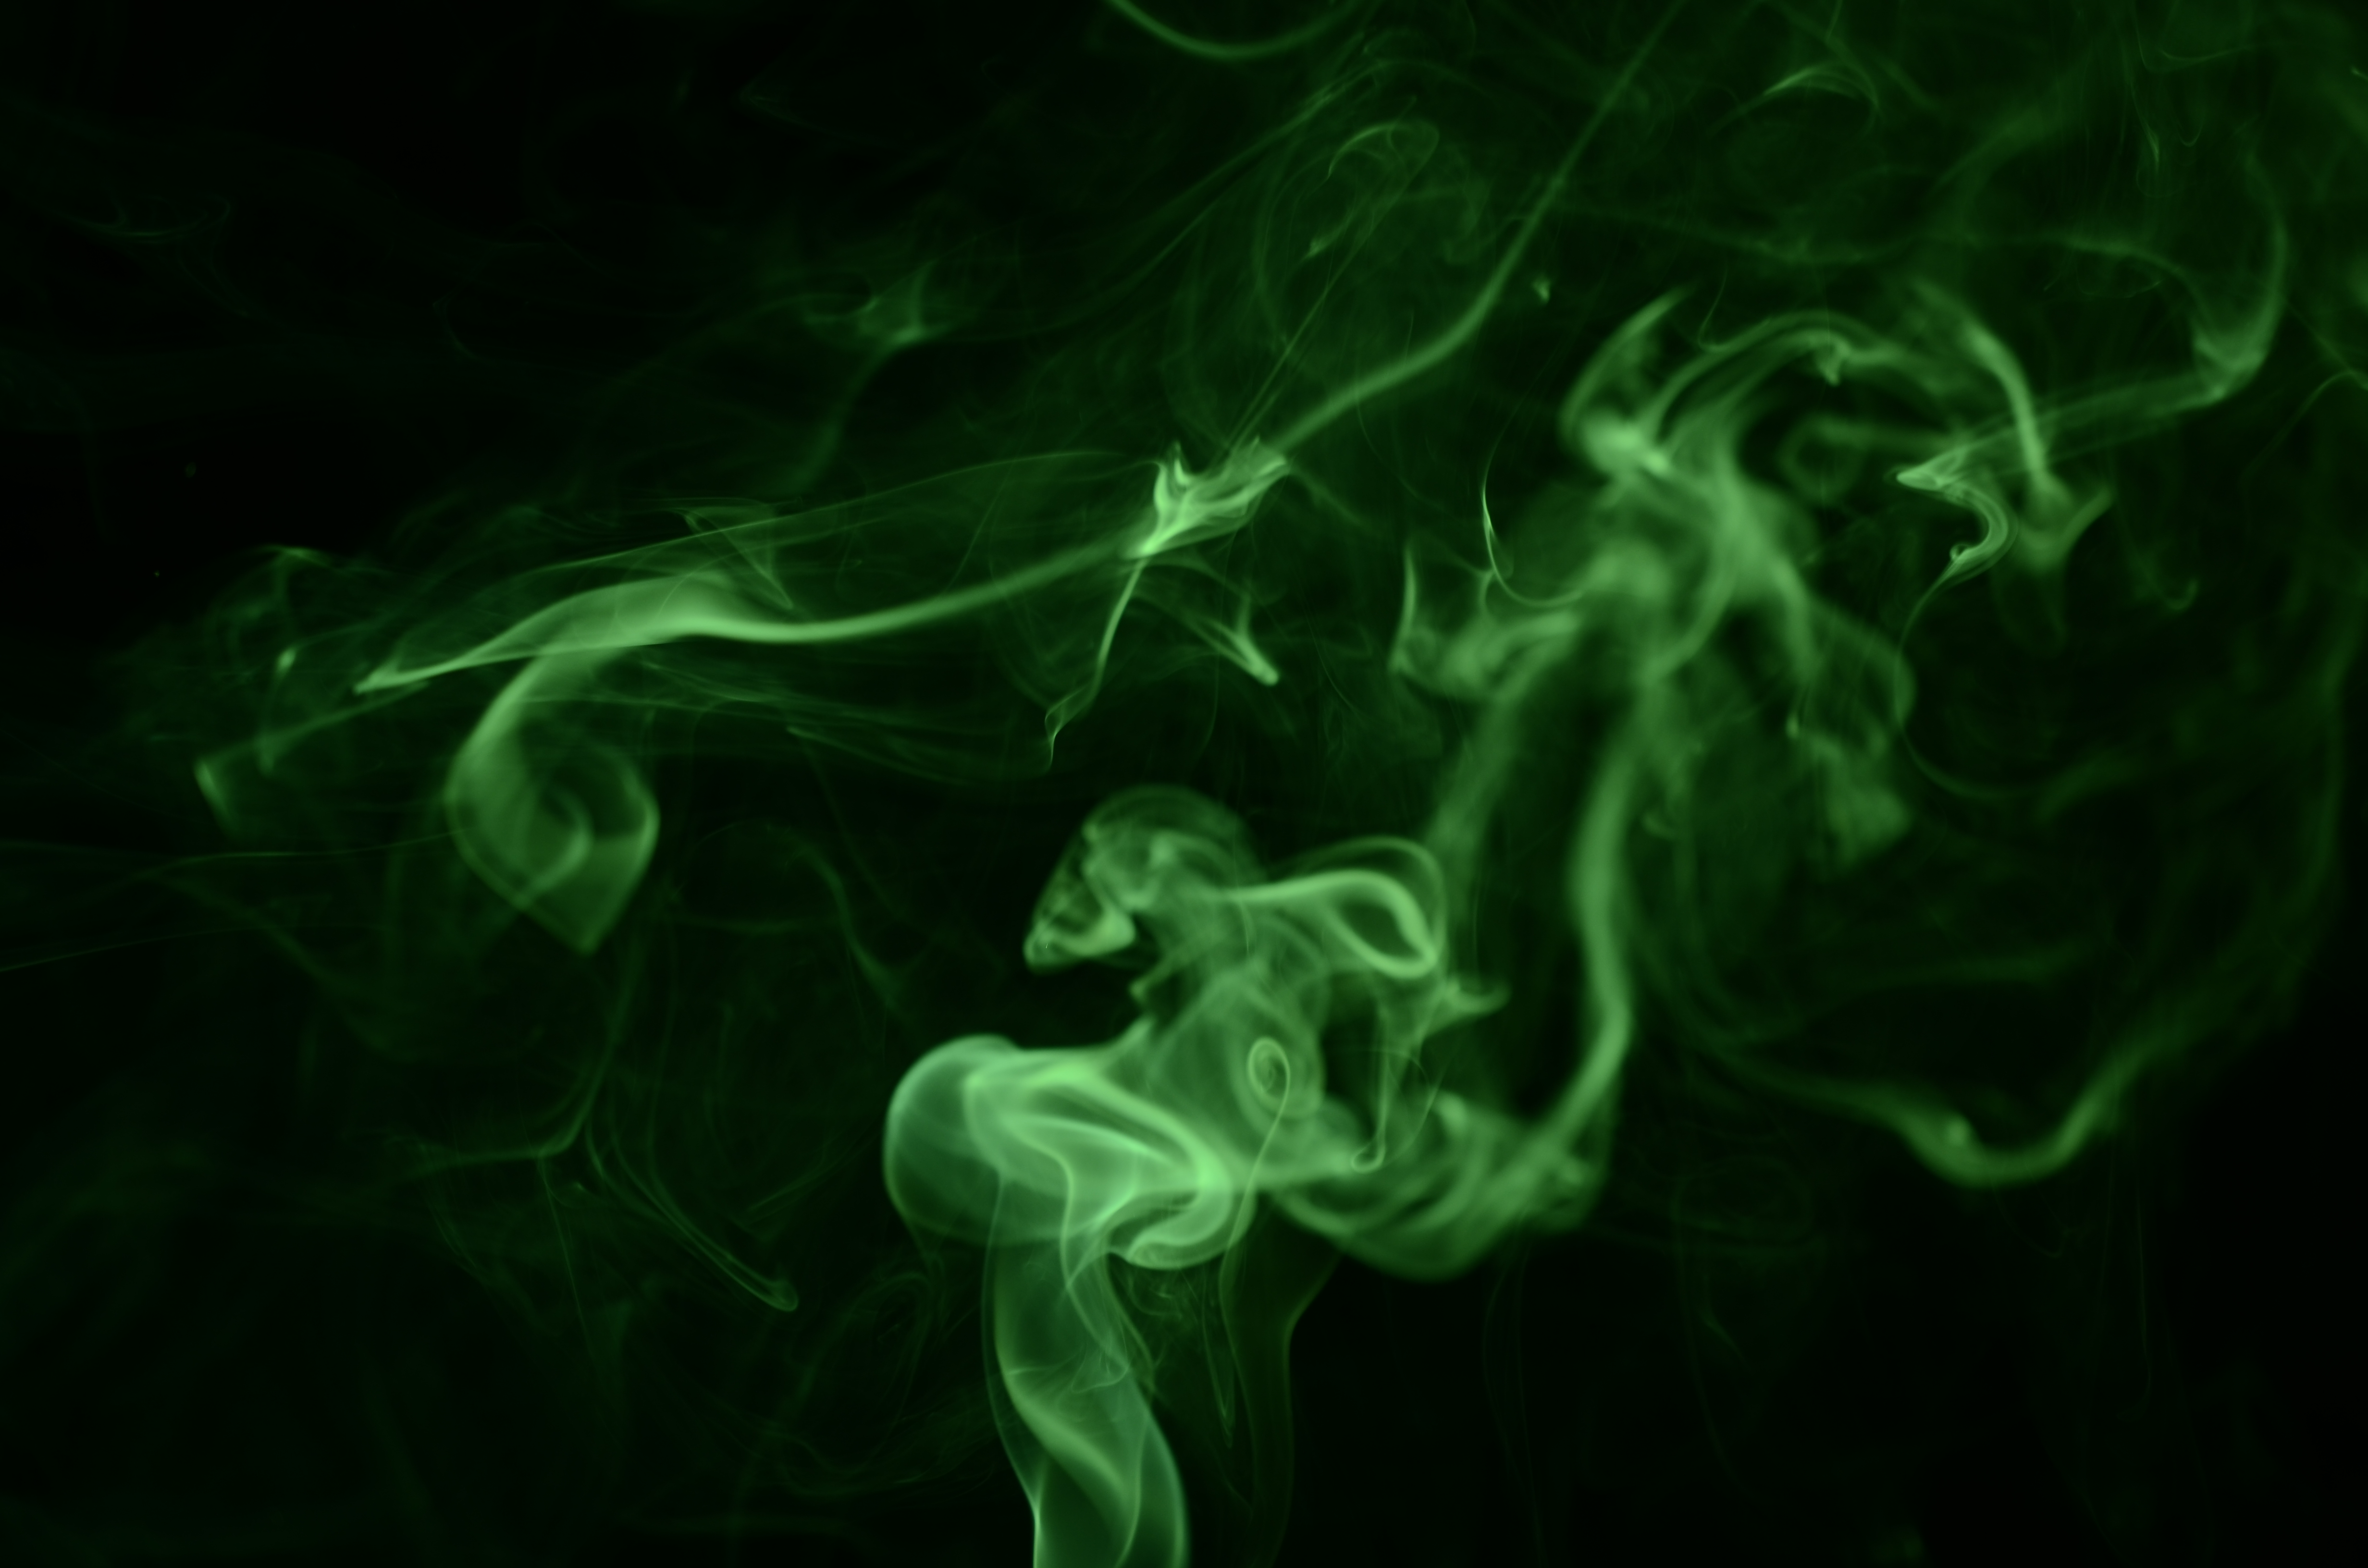 Green smoke by DaAtte on DeviantArt